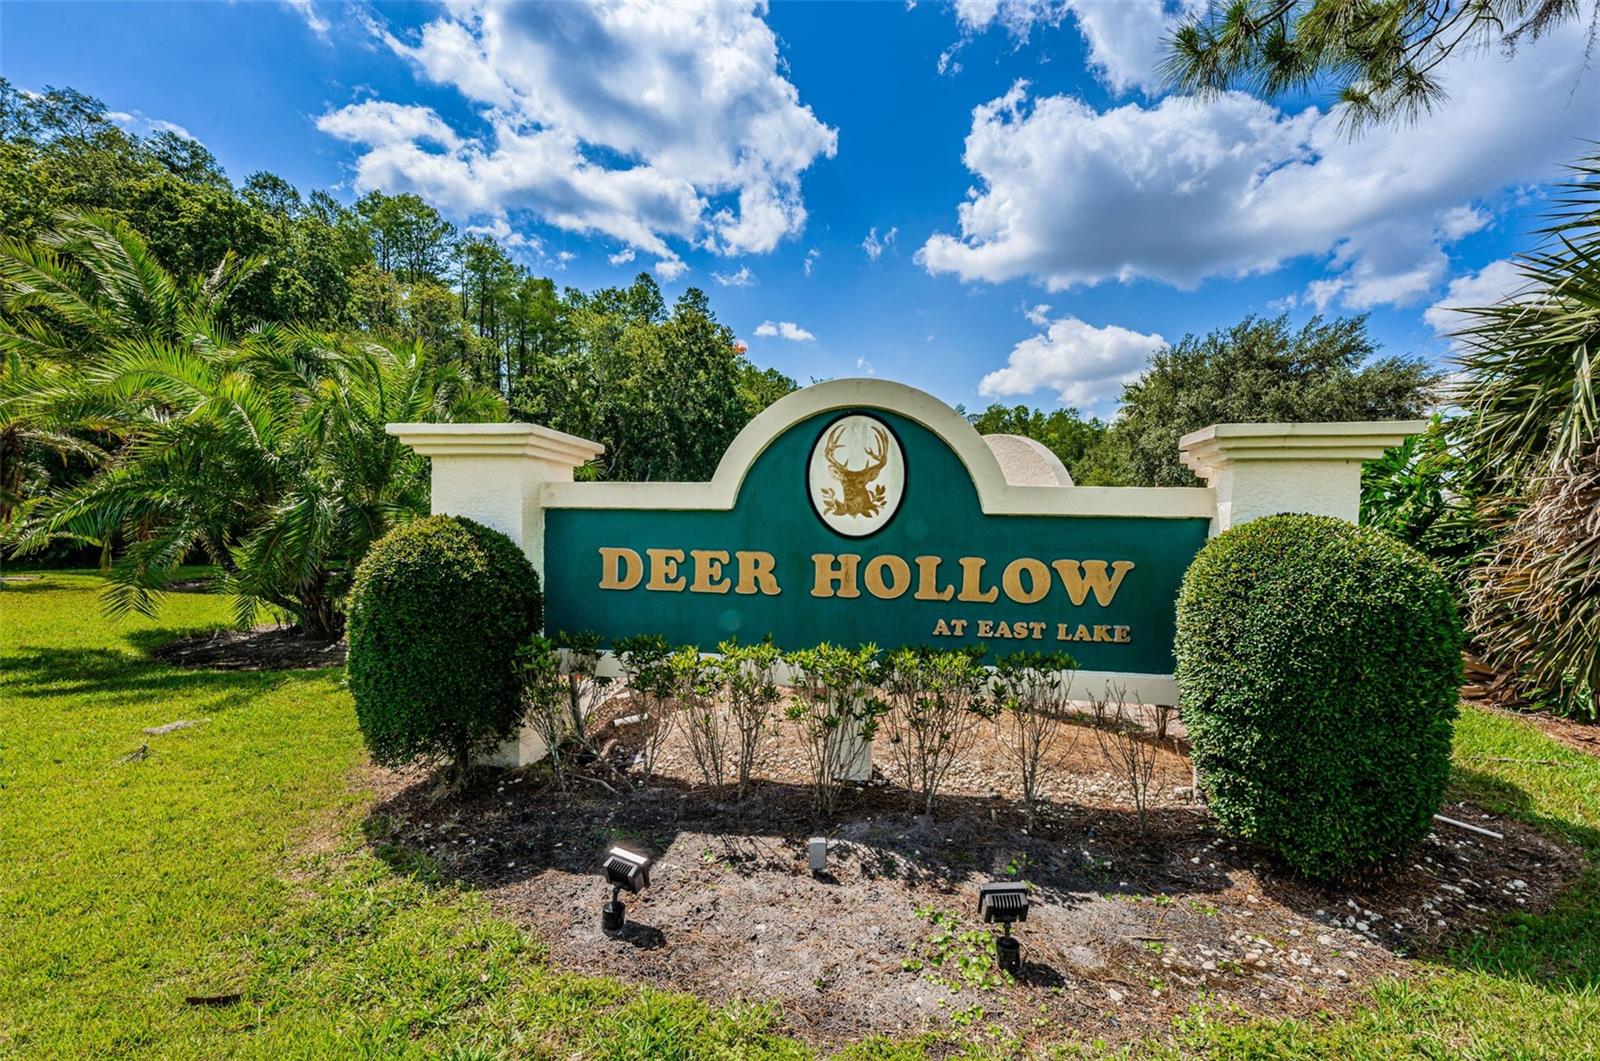 Welcome to Deer Hollow